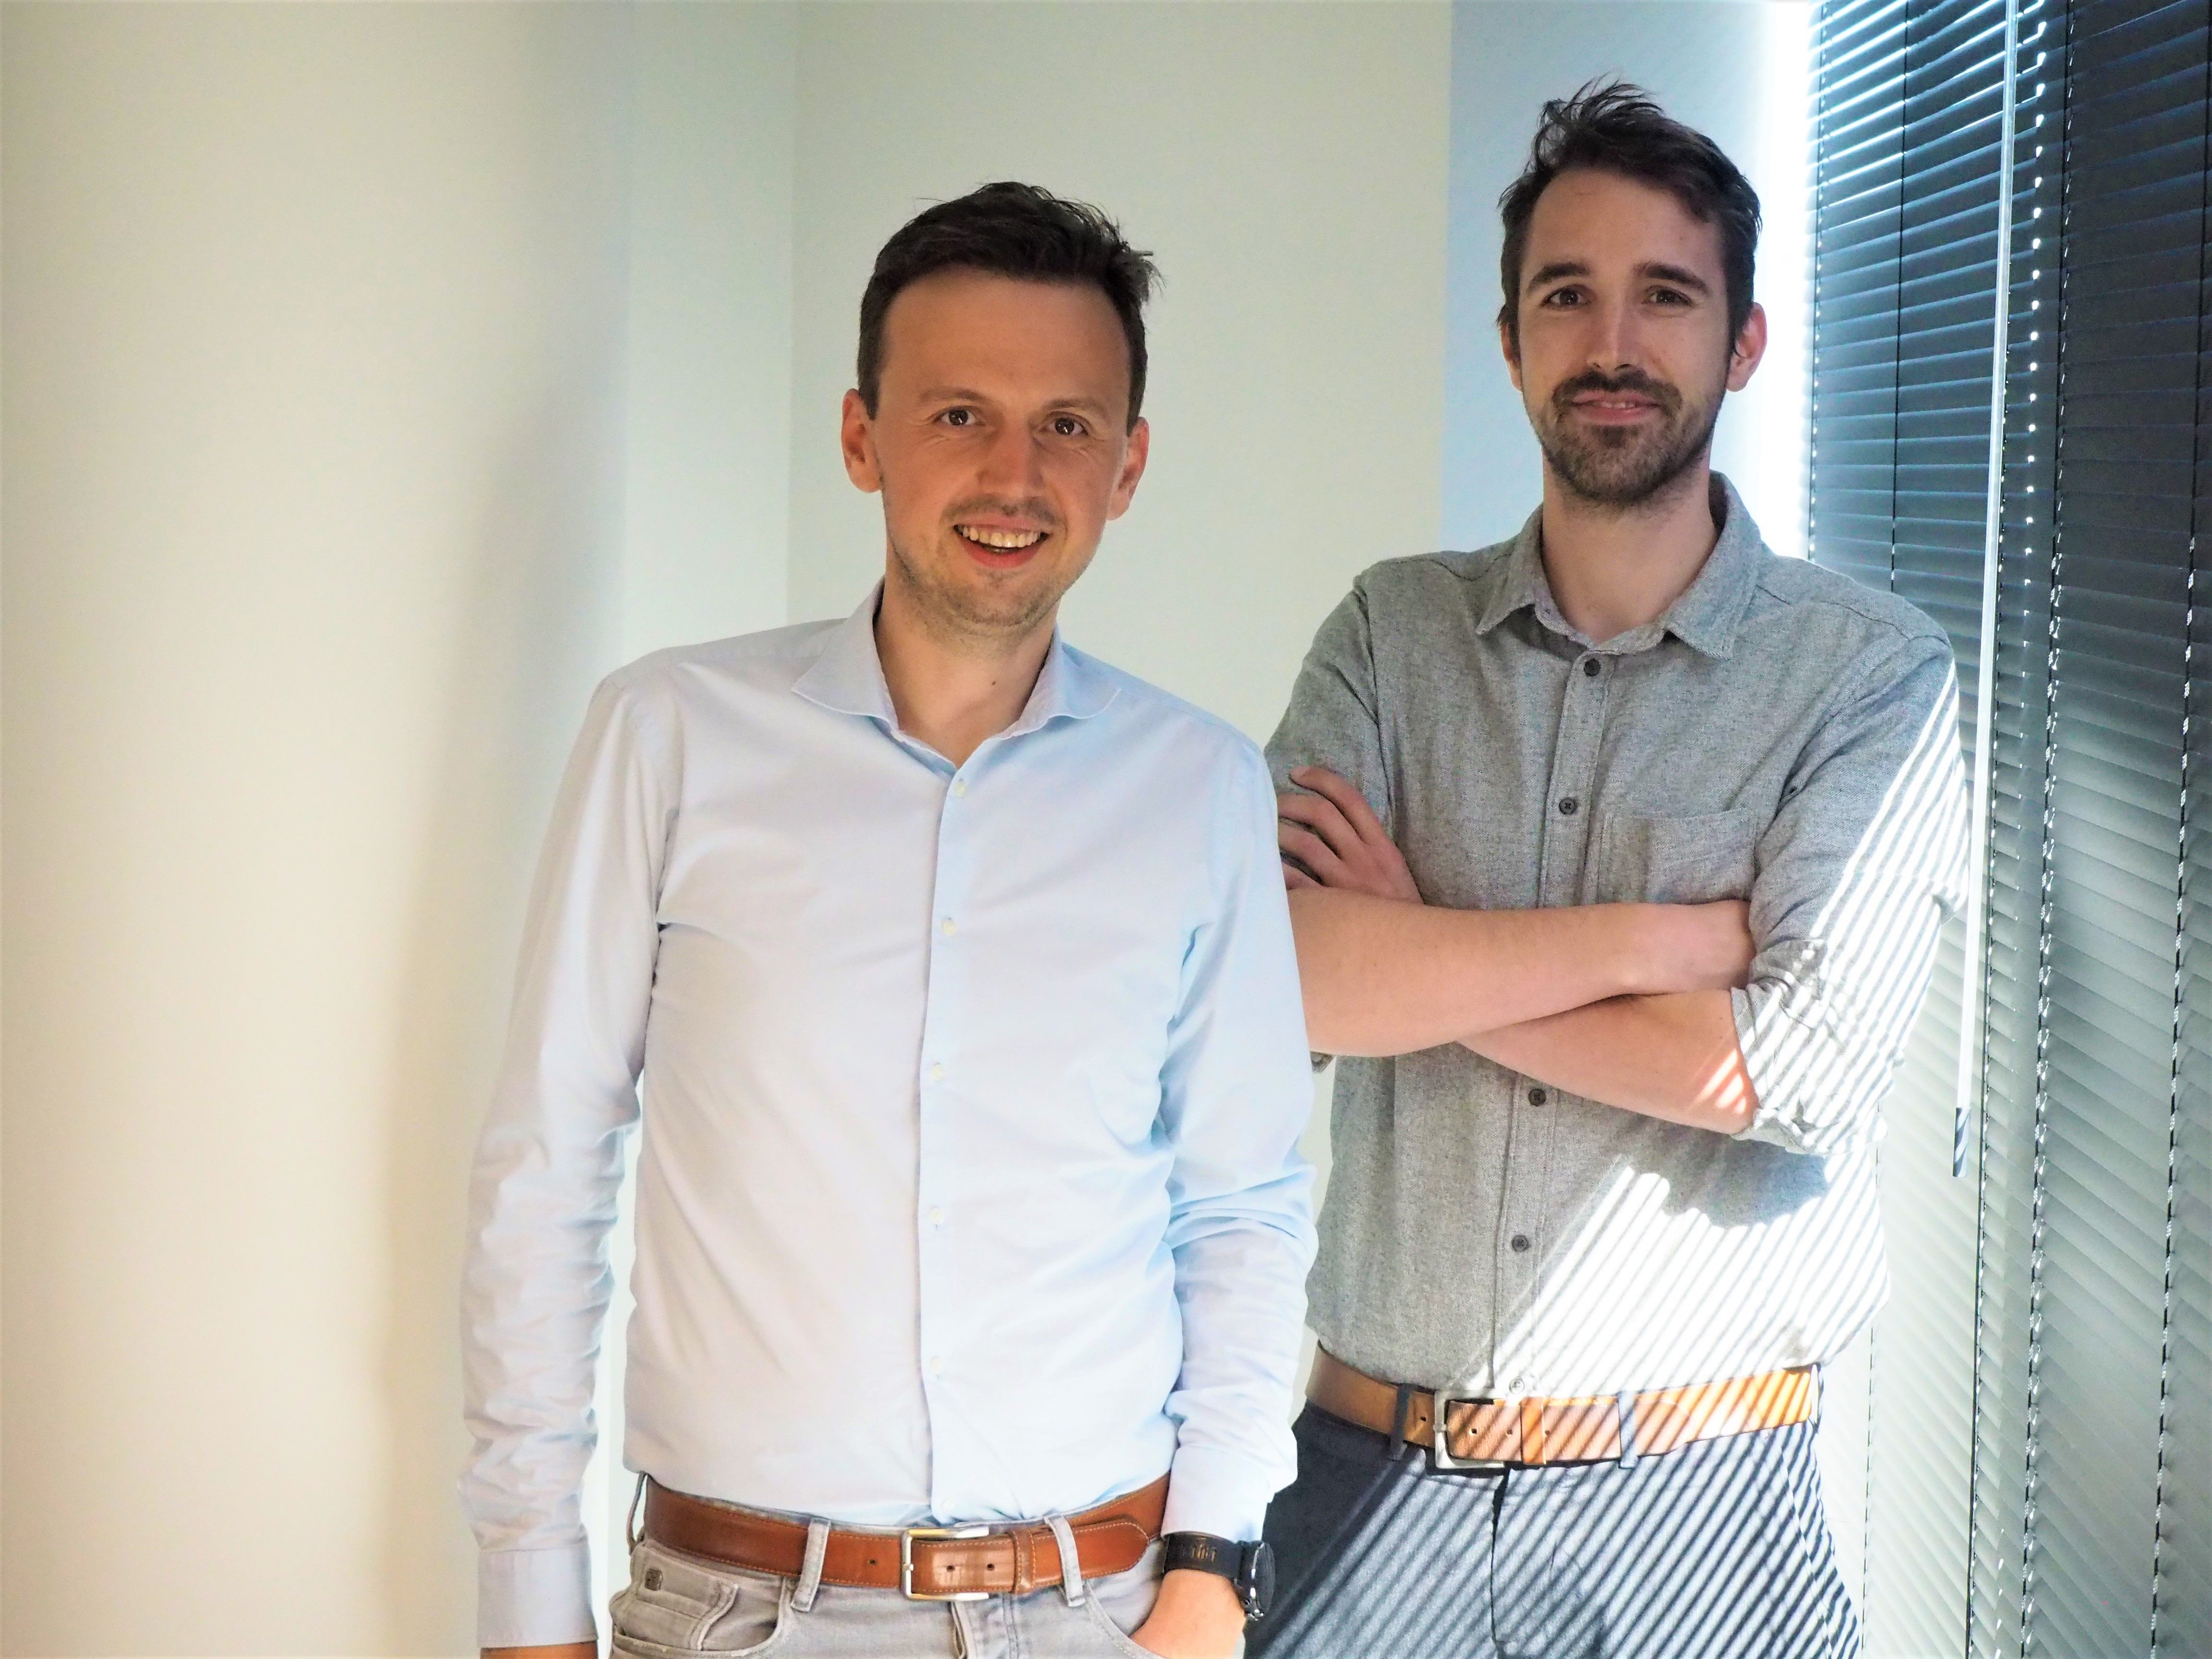 v.l.n.r. Oprichters Maarten Callaert en Stijn Decubber, Product Lead en Tech Lead bij Paperbox